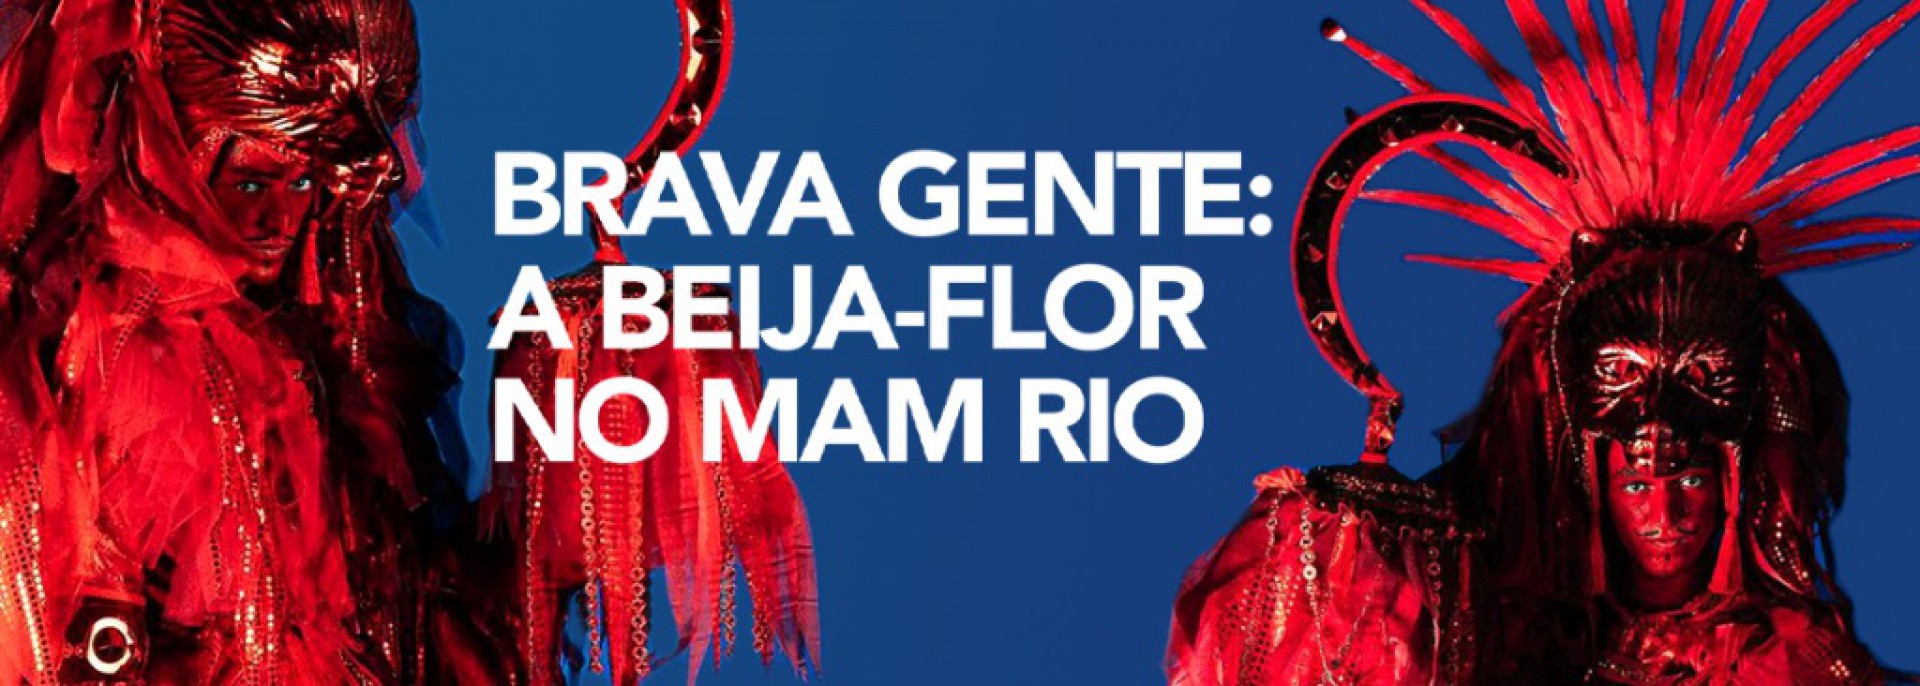 O programa 'Brava gente: a Beija-Flor no MAM Rio' se estenderá até o início de 2023 com participação de integrantes célebres da escola de samba, como, a porta-bandeira Selminha Sorriso e o mestre-sala Claudinho - Divulgação